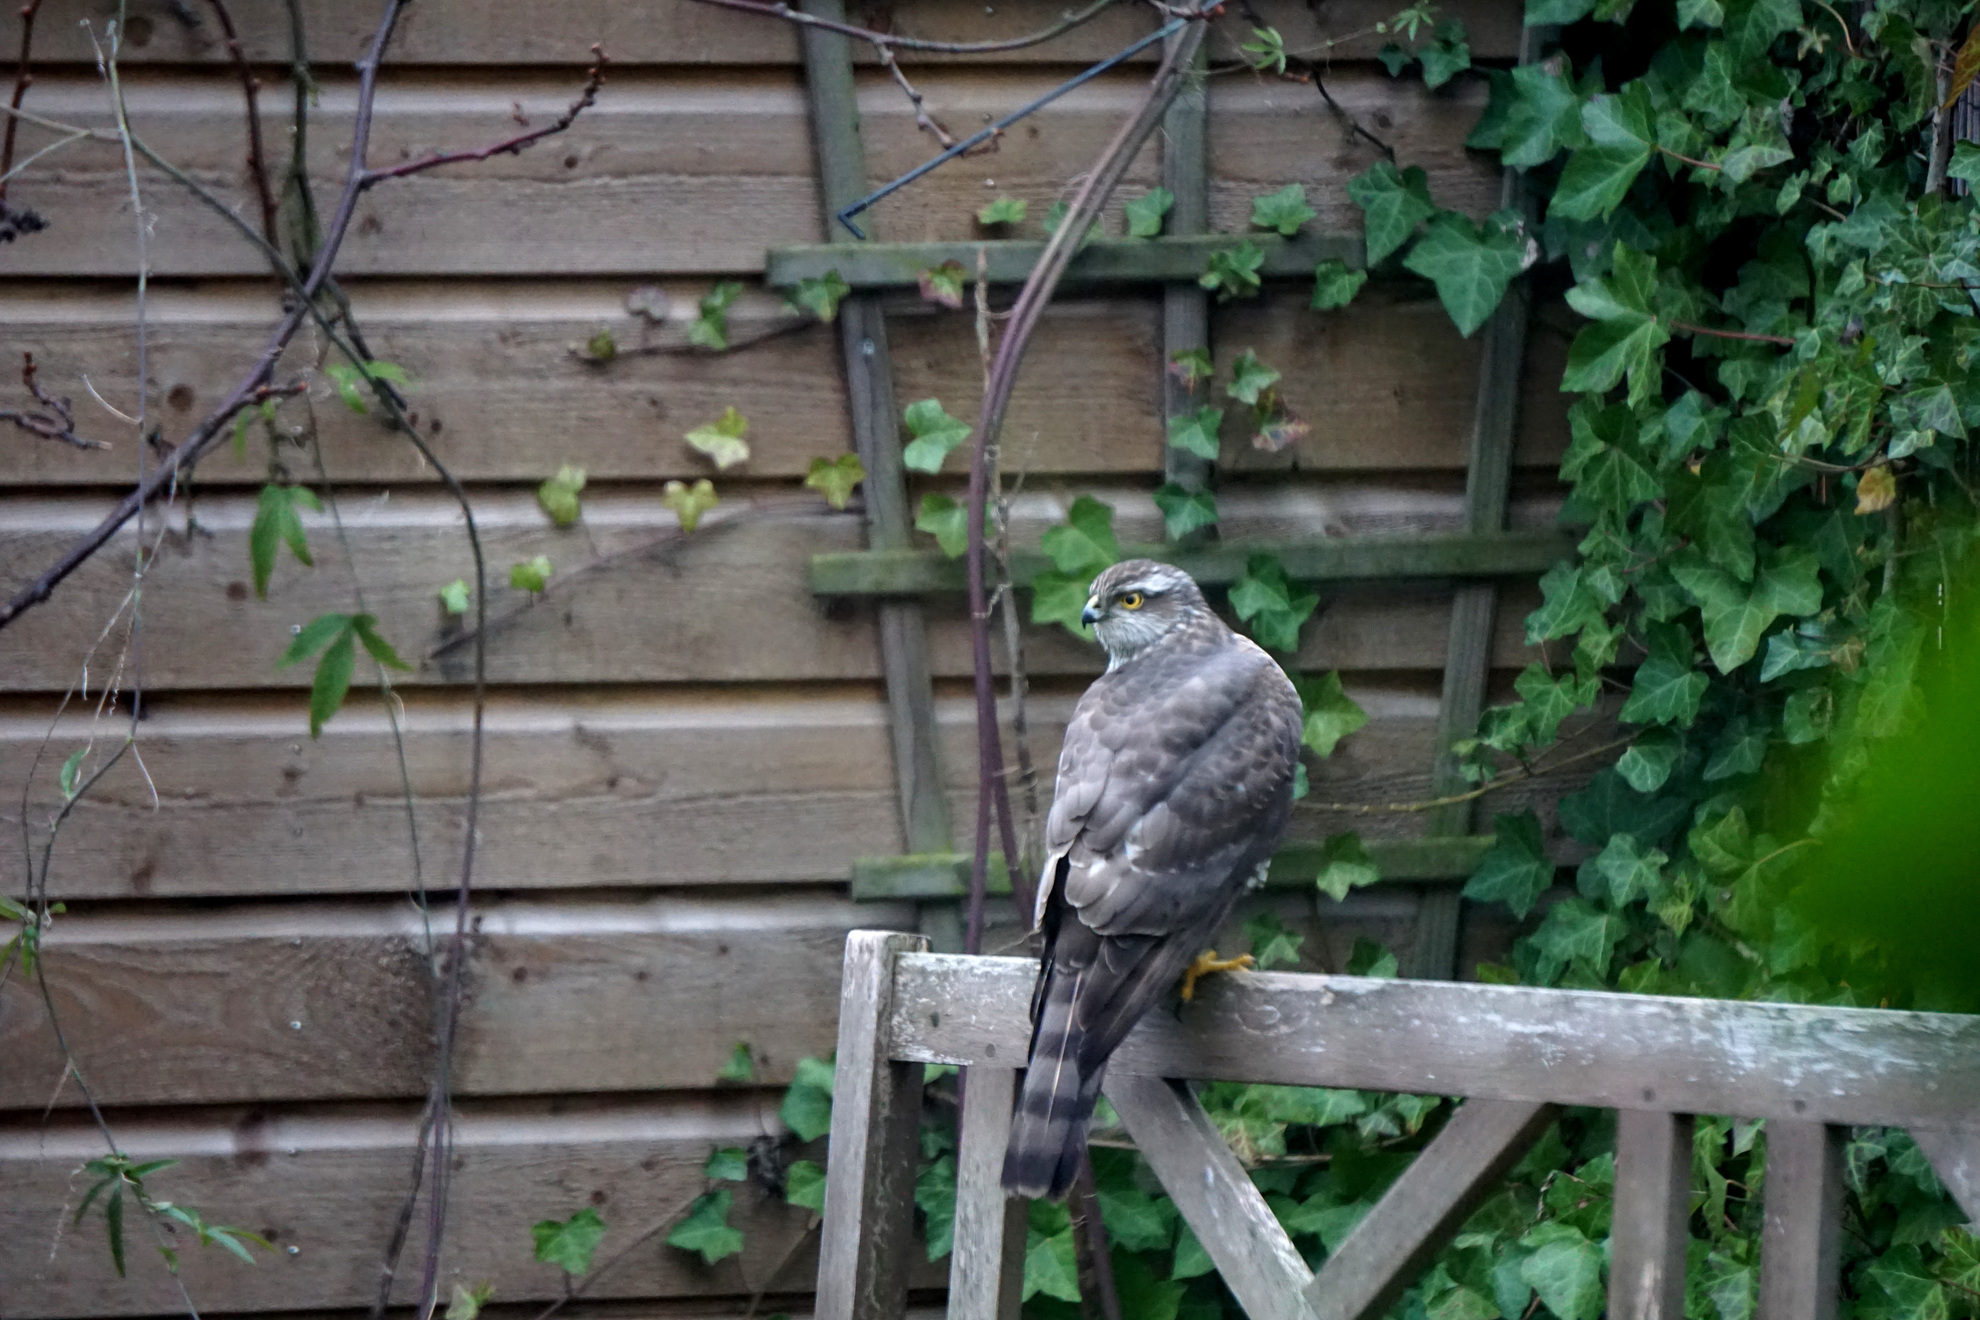 Sparrowhawk on our garden bench